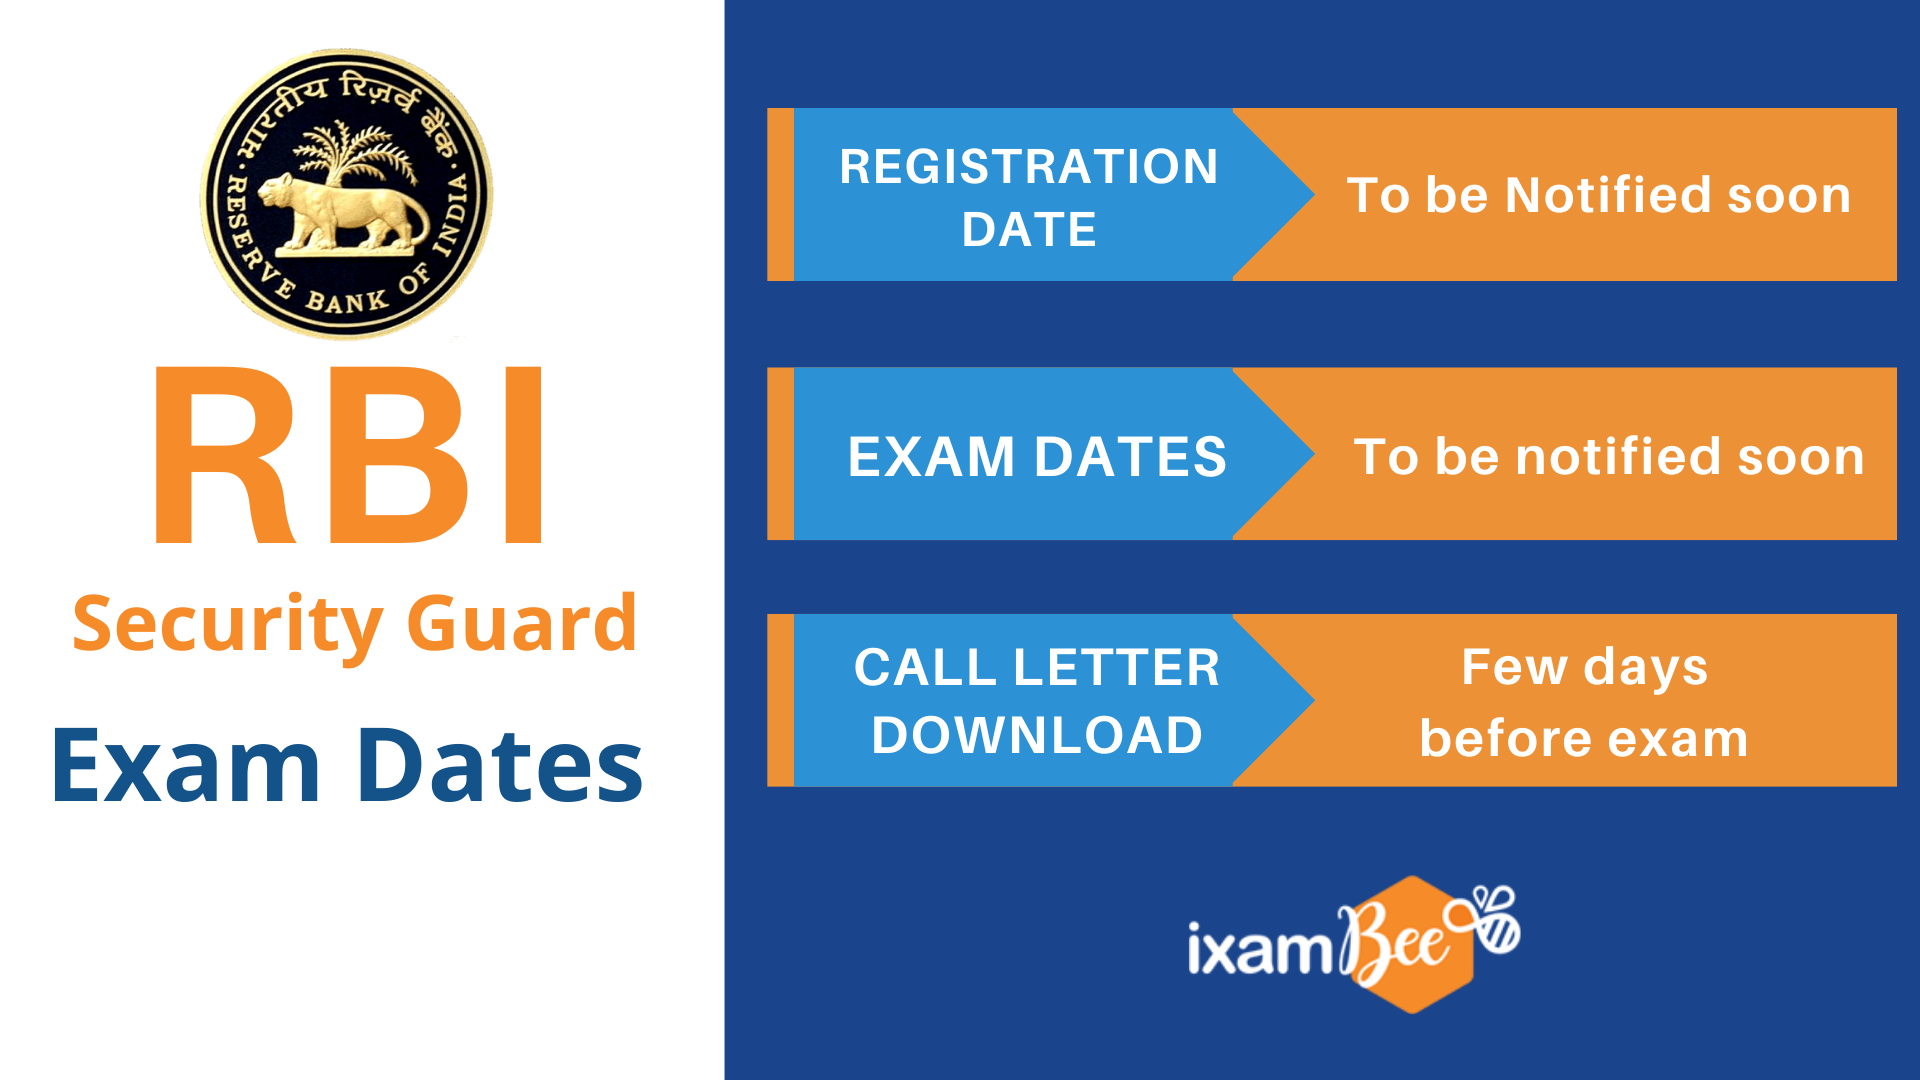 RBI Security Guard Exam Dates